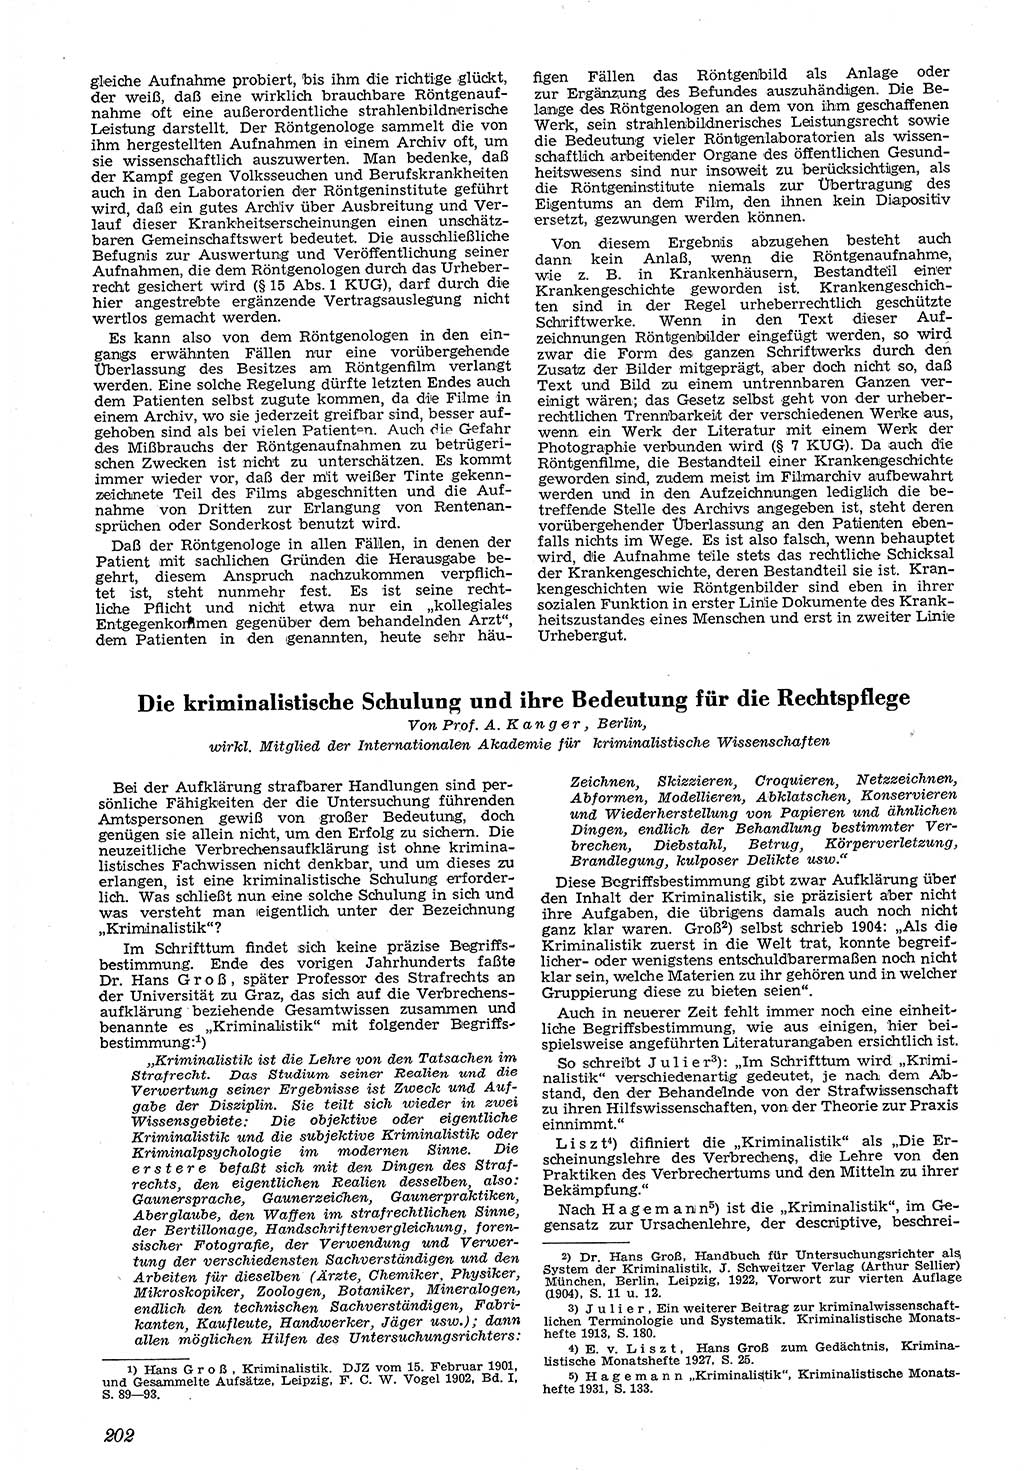 Neue Justiz (NJ), Zeitschrift für Recht und Rechtswissenschaft [Deutsche Demokratische Republik (DDR)], 4. Jahrgang 1950, Seite 202 (NJ DDR 1950, S. 202)